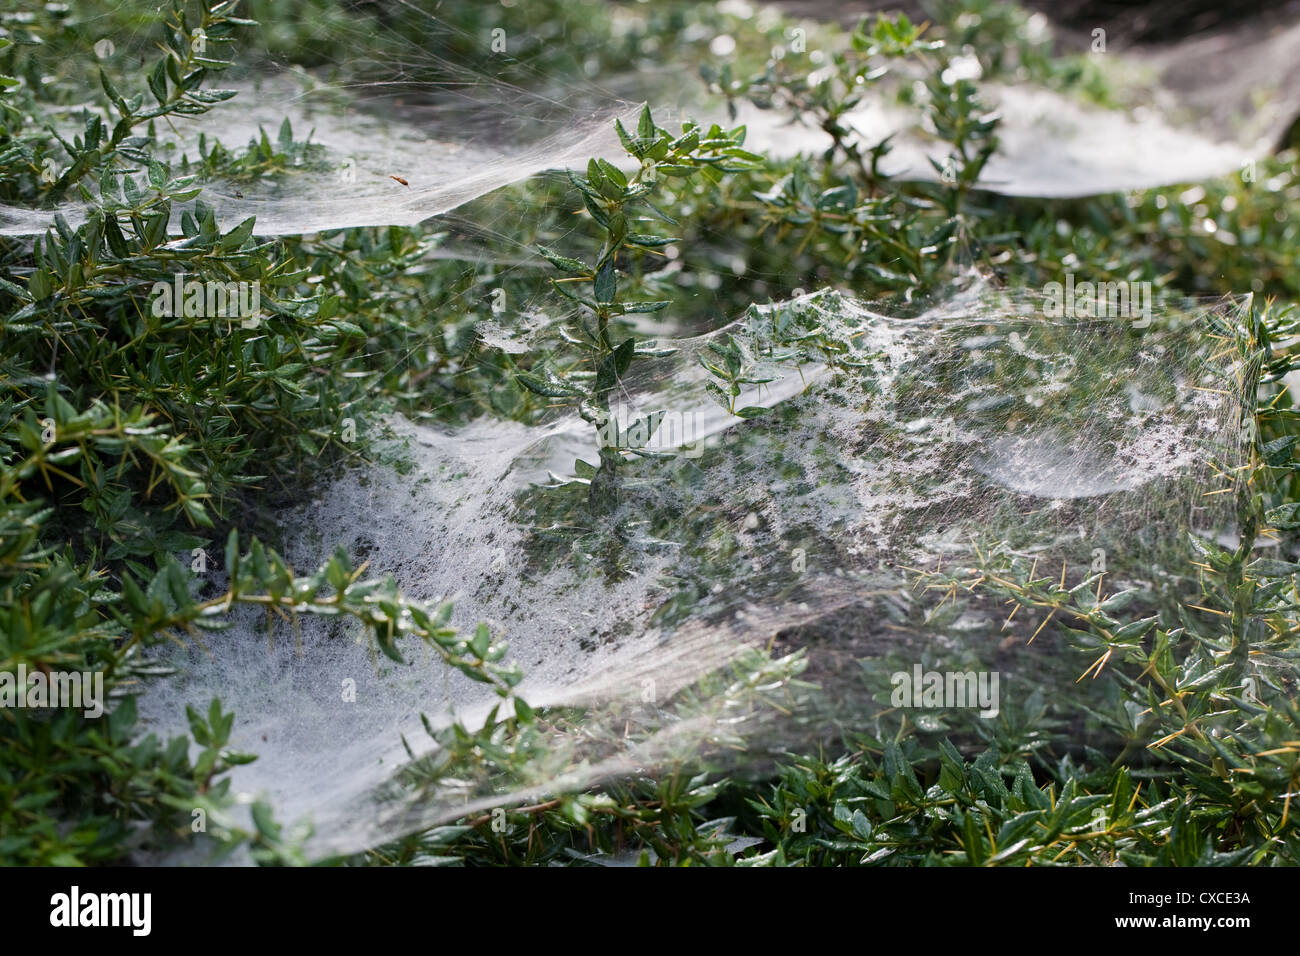 'Dinero' o 'Saraña araña Linyphid heetweaver' (sp. ) Varias webs hamaca extendiéndose a través de ramas de arbusto de jardín. Foto de stock